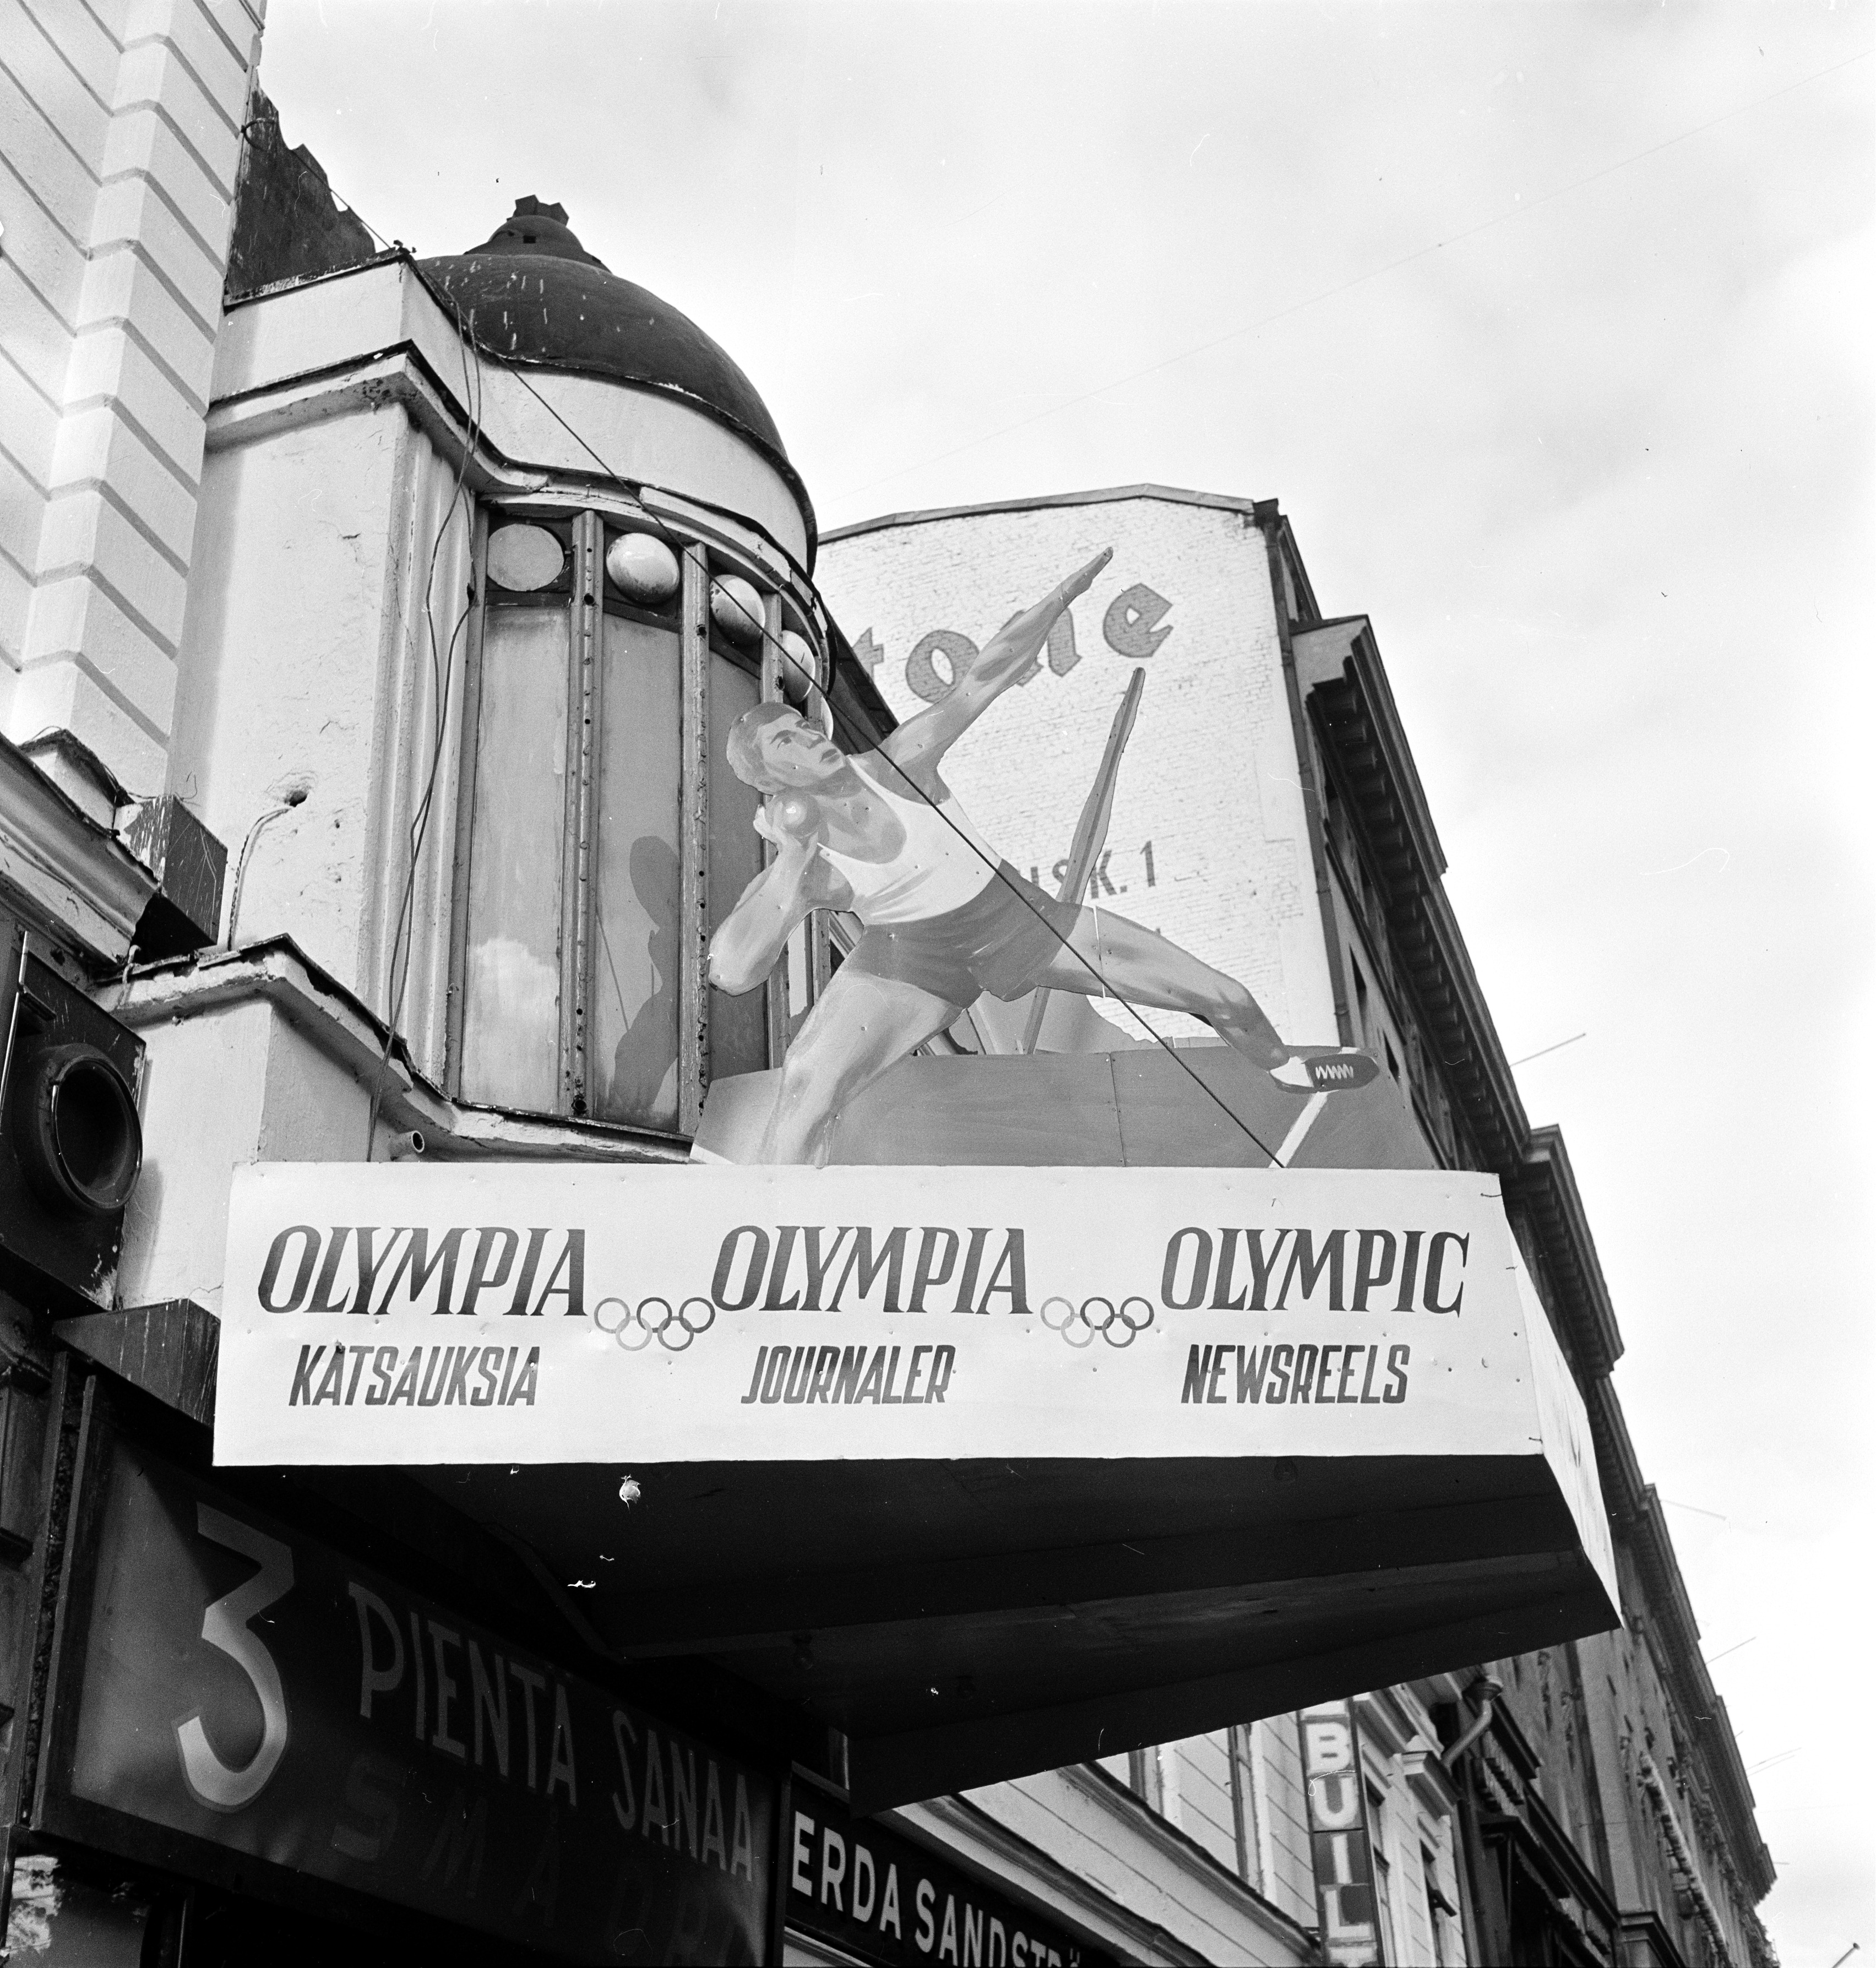 Helsingin olympialaiset 1952. Elokuvateatteri Kino-Paltsin mainostaulu Olympiakatsauksia -elokuvista, Pohjoisesplanadi 39.